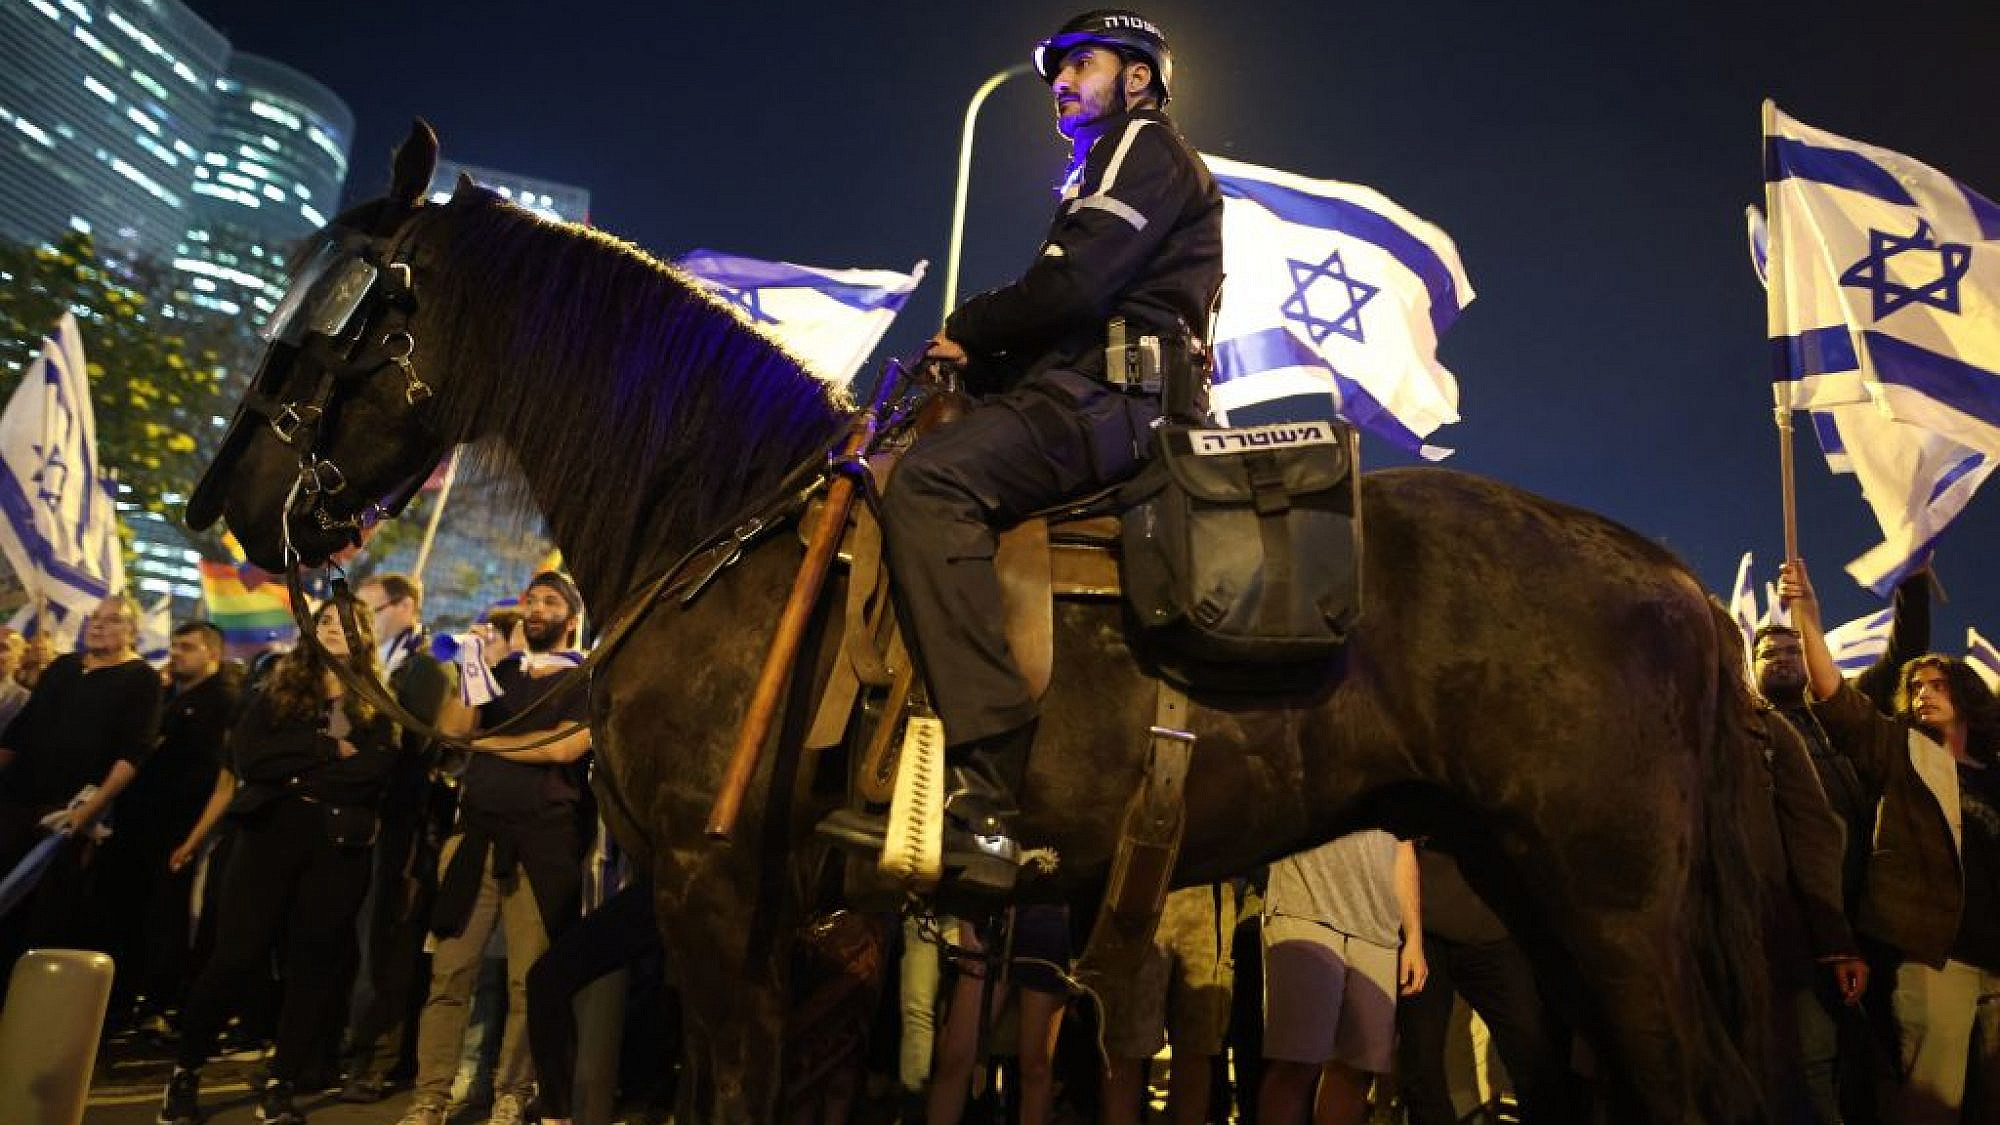 שוטר וסוס משקיפים על ההפגנה בקפלן. 26.3. צילום: גיל כהן-מגן/AFP via Getty Images